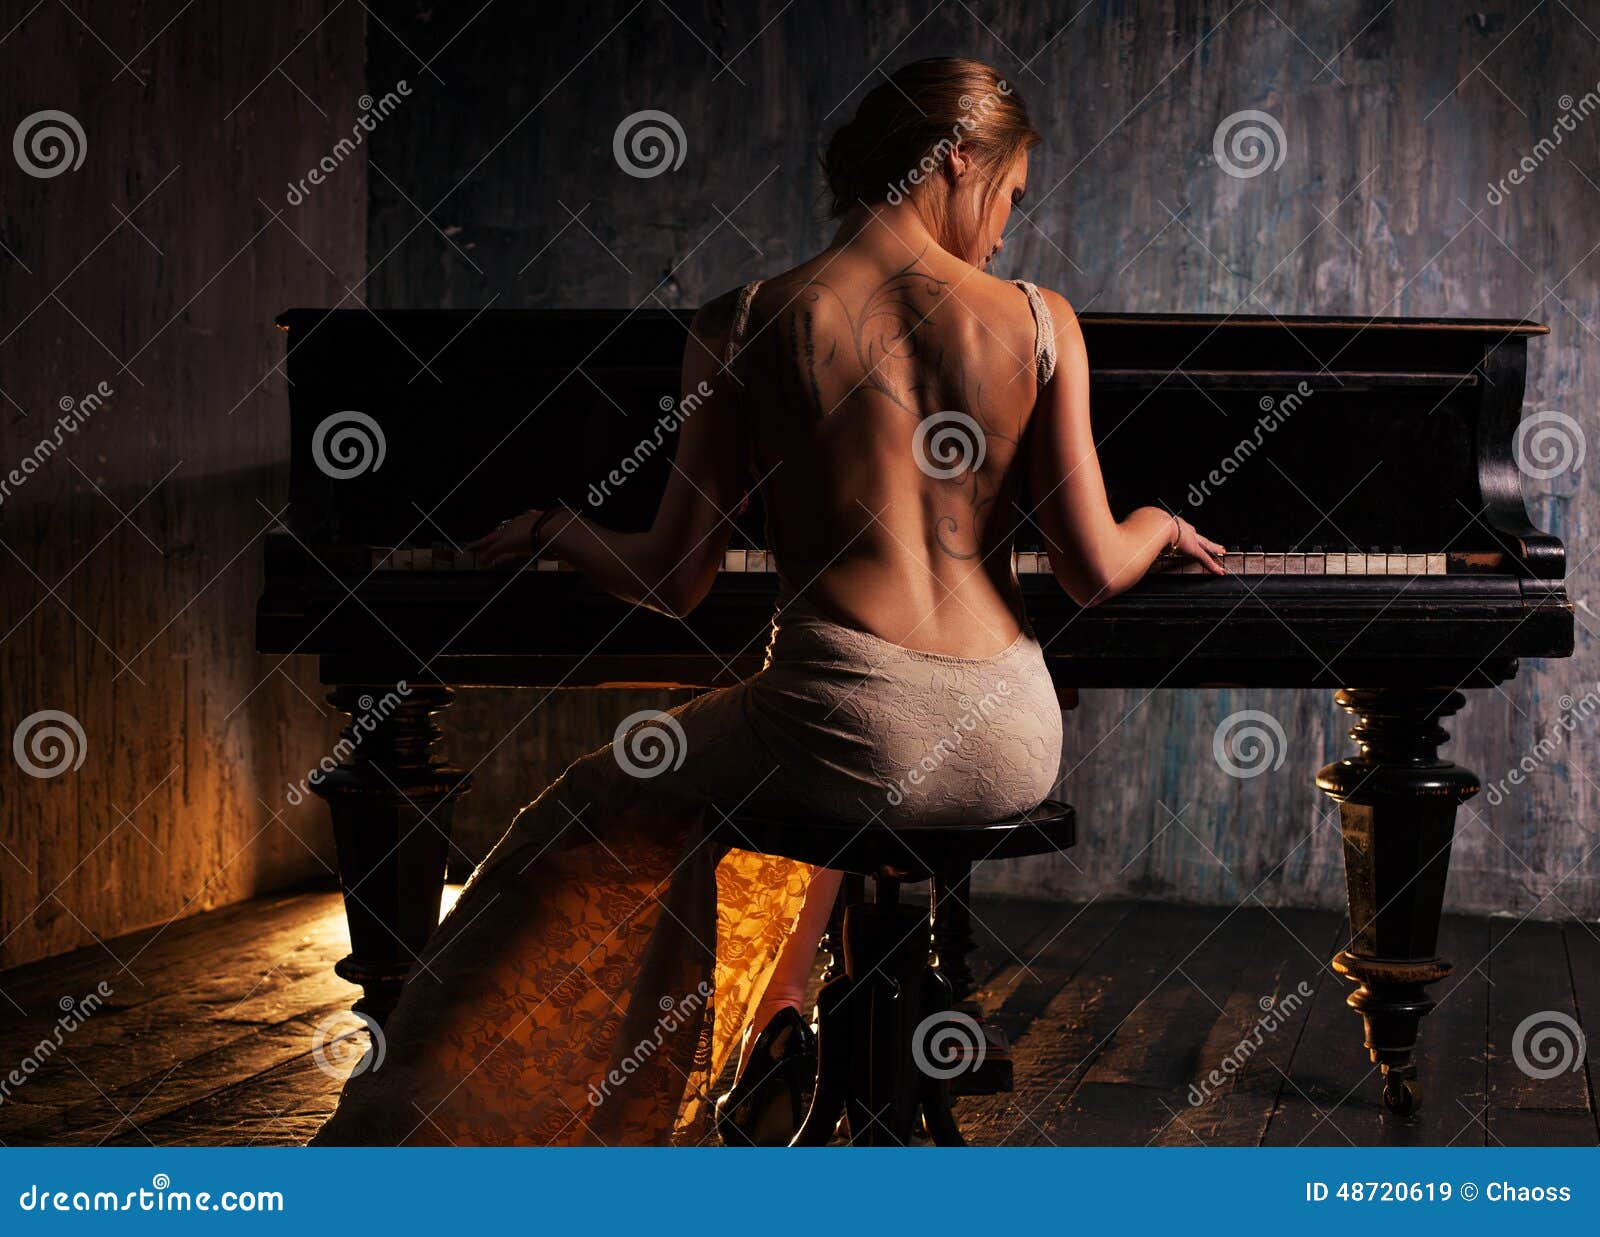 Playing Piano Naked Big Titts Models